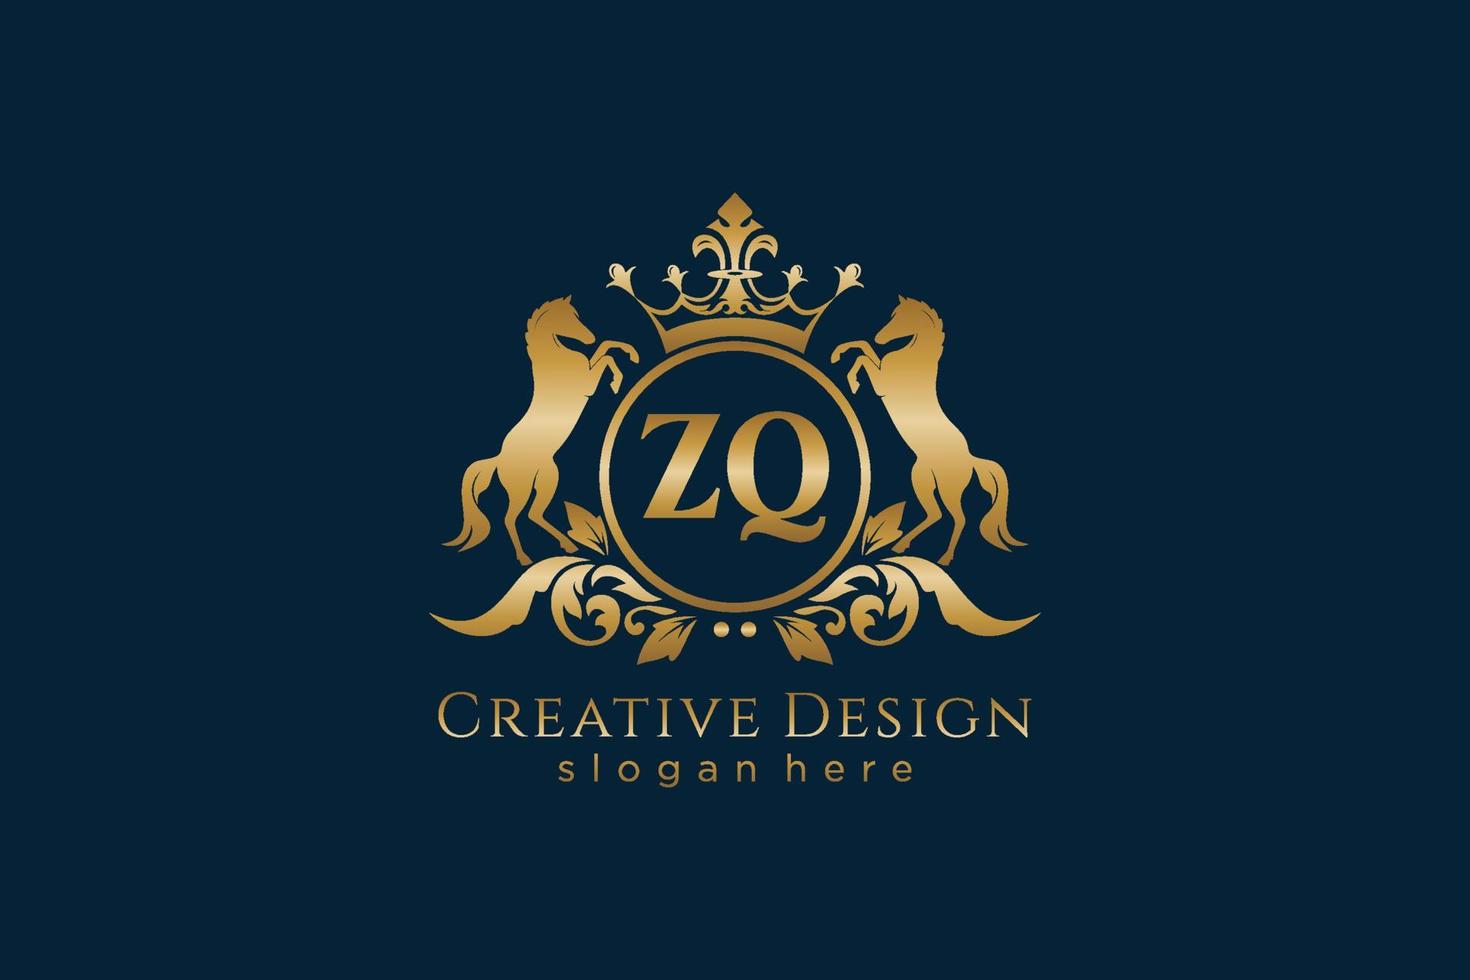 cresta dorada retro zq inicial con círculo y dos caballos, plantilla de insignia con pergaminos y corona real - perfecto para proyectos de marca de lujo vector